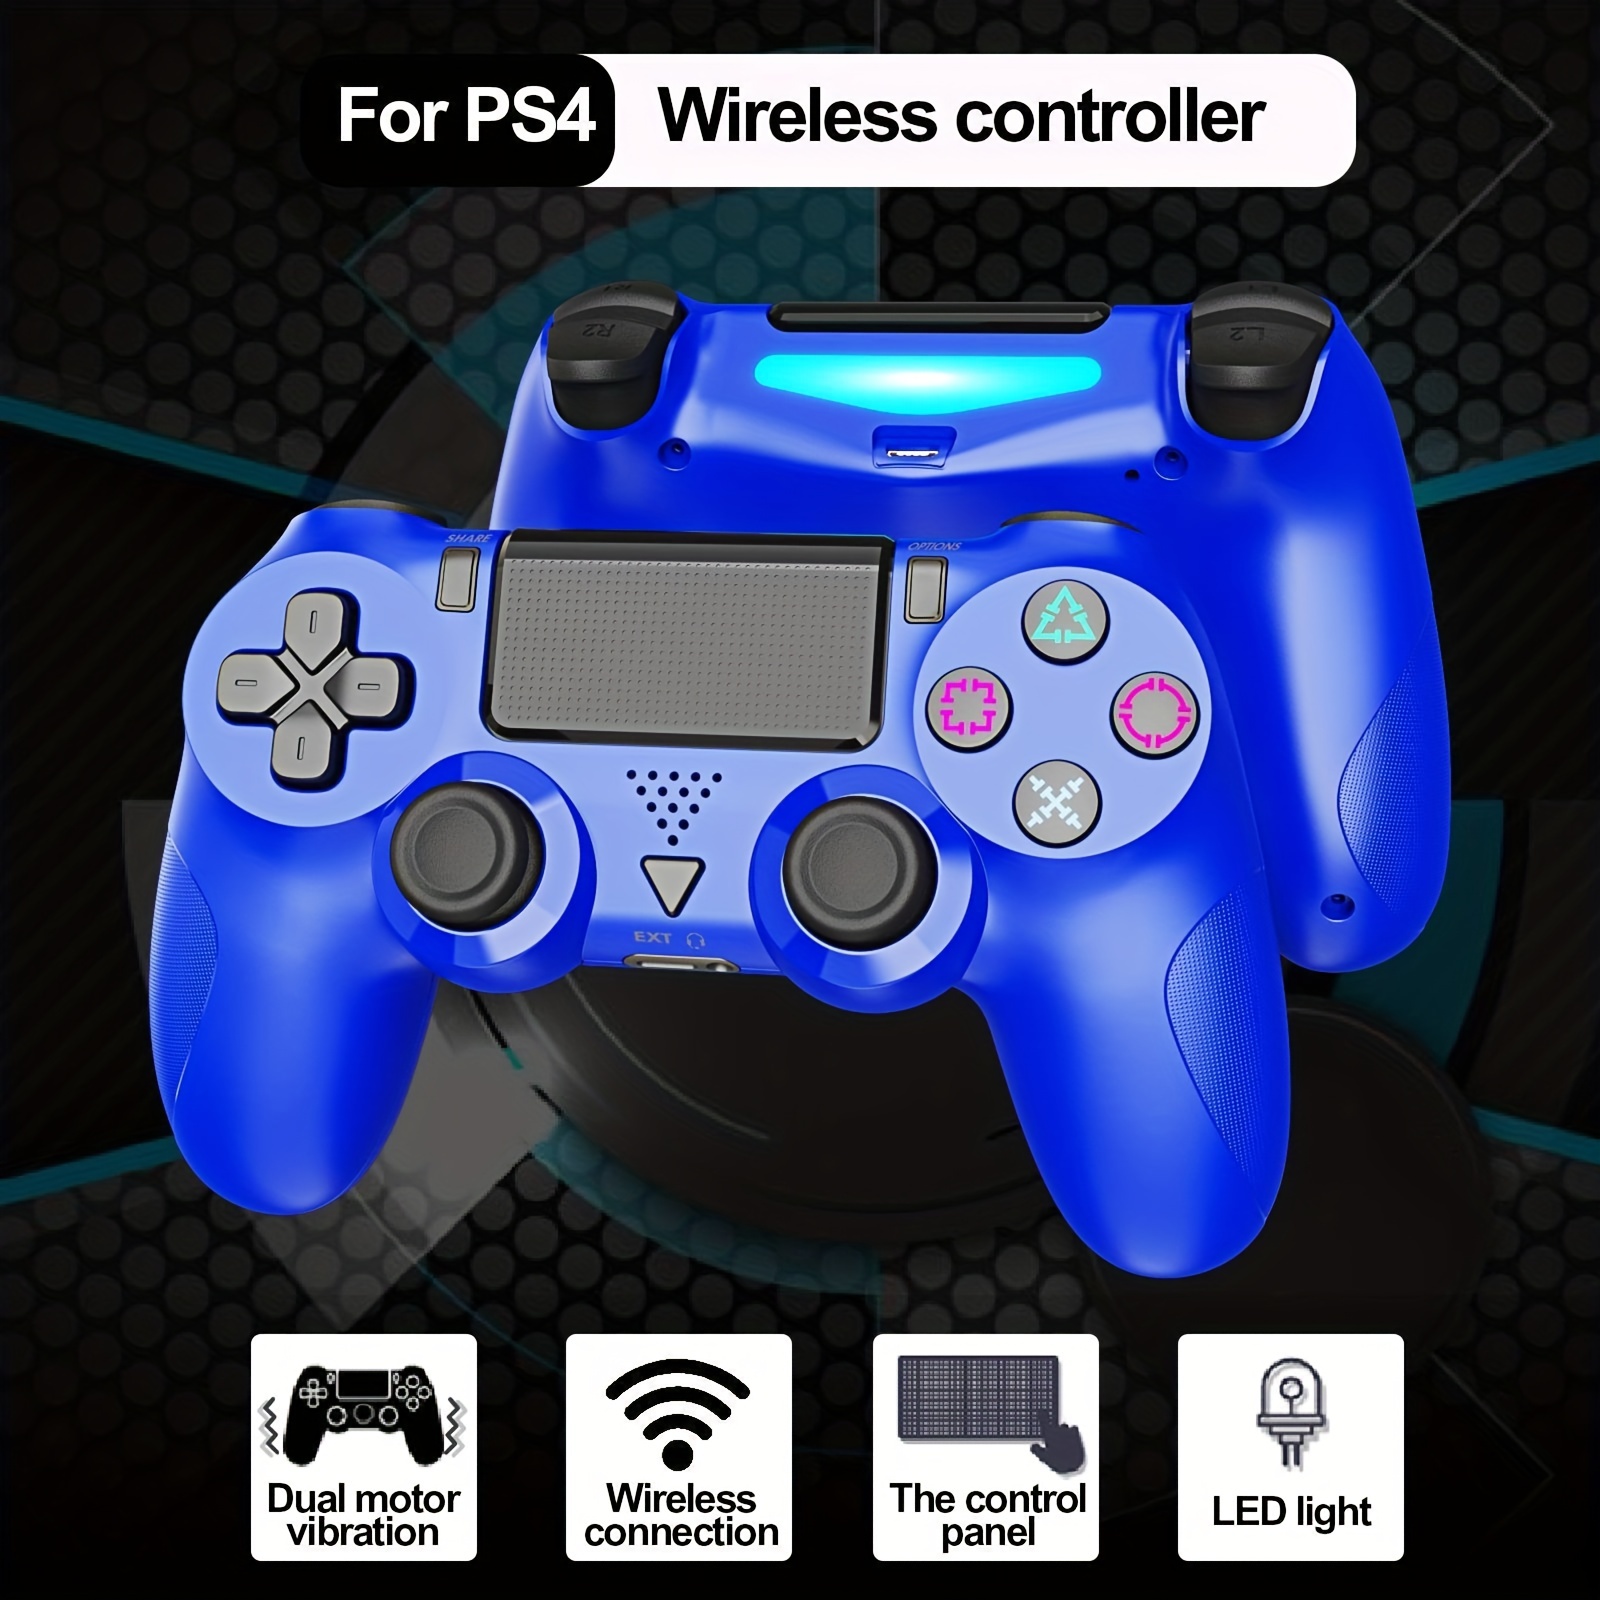 Controller Wireless Joystick Gioco Ps4/pro/slim Compatibile - Temu